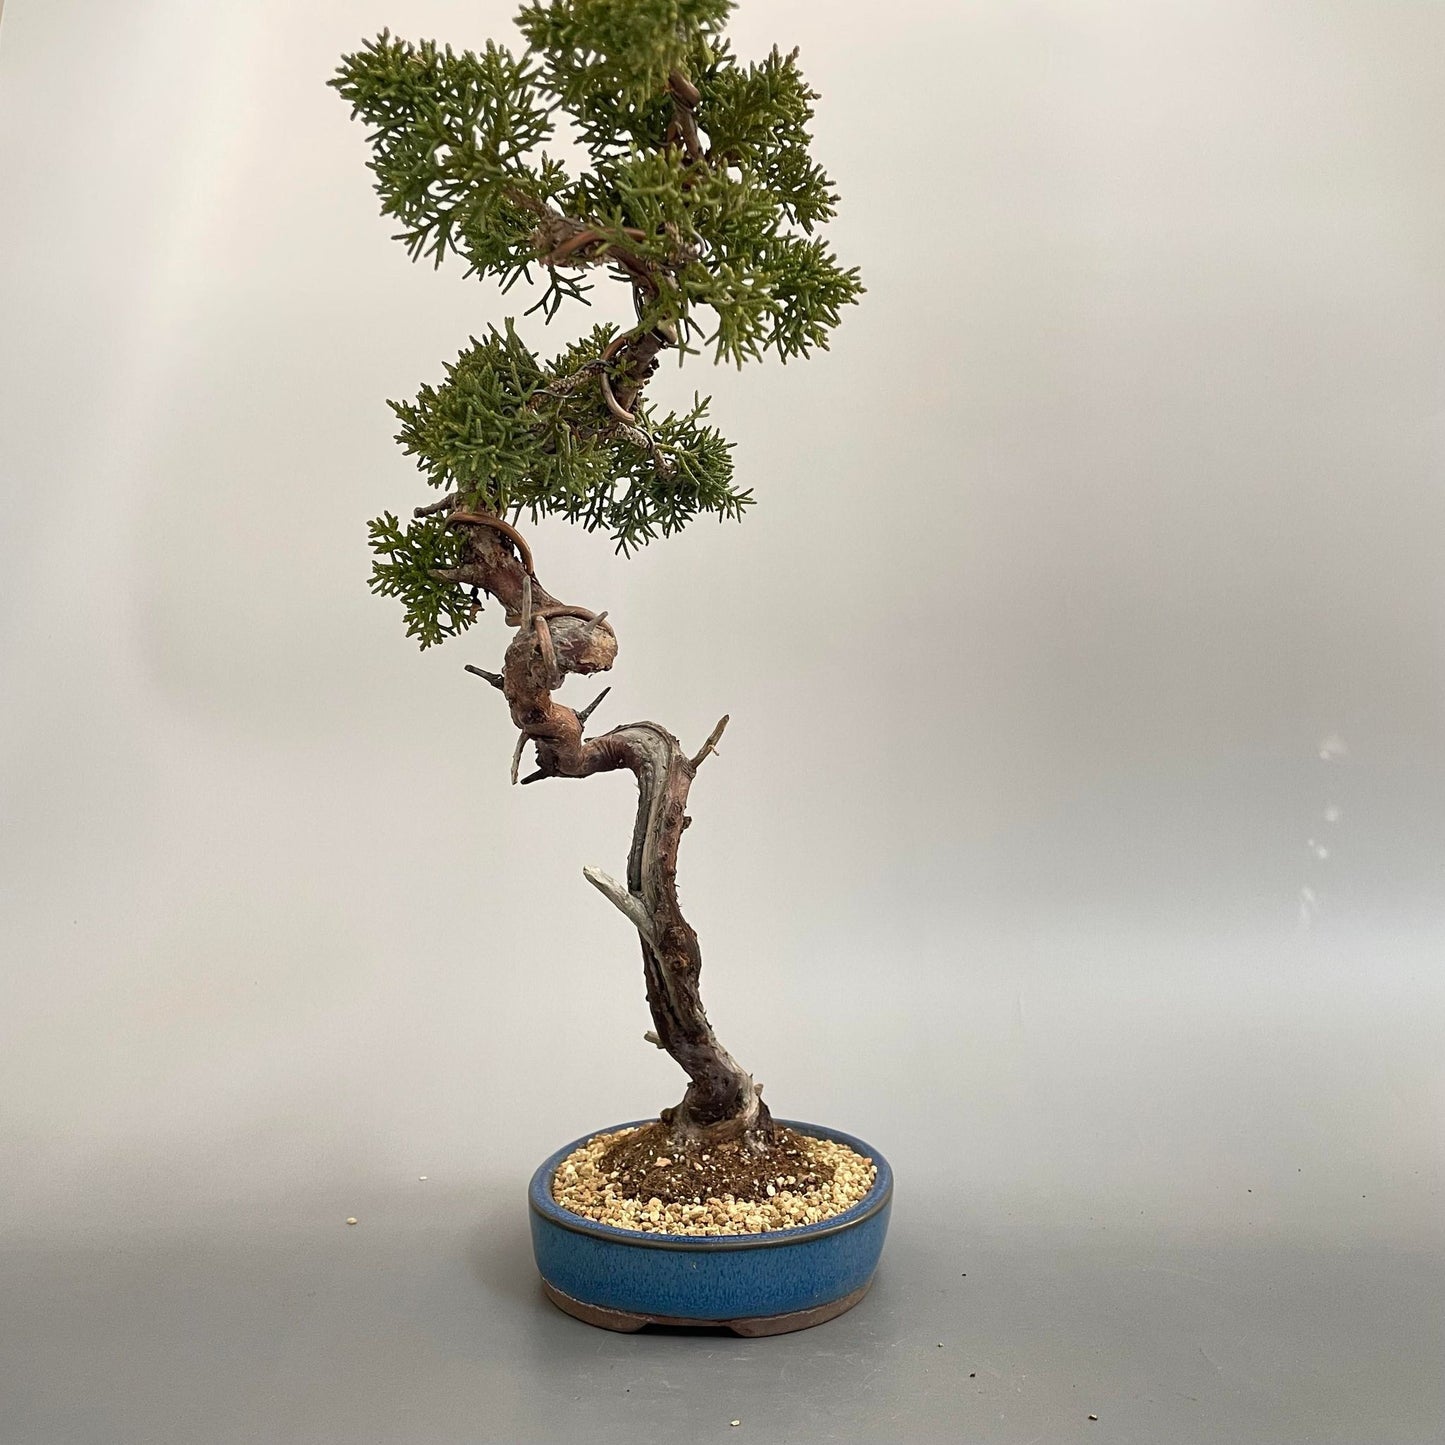 Tsuyama Hinoi cypress shohin bonsai